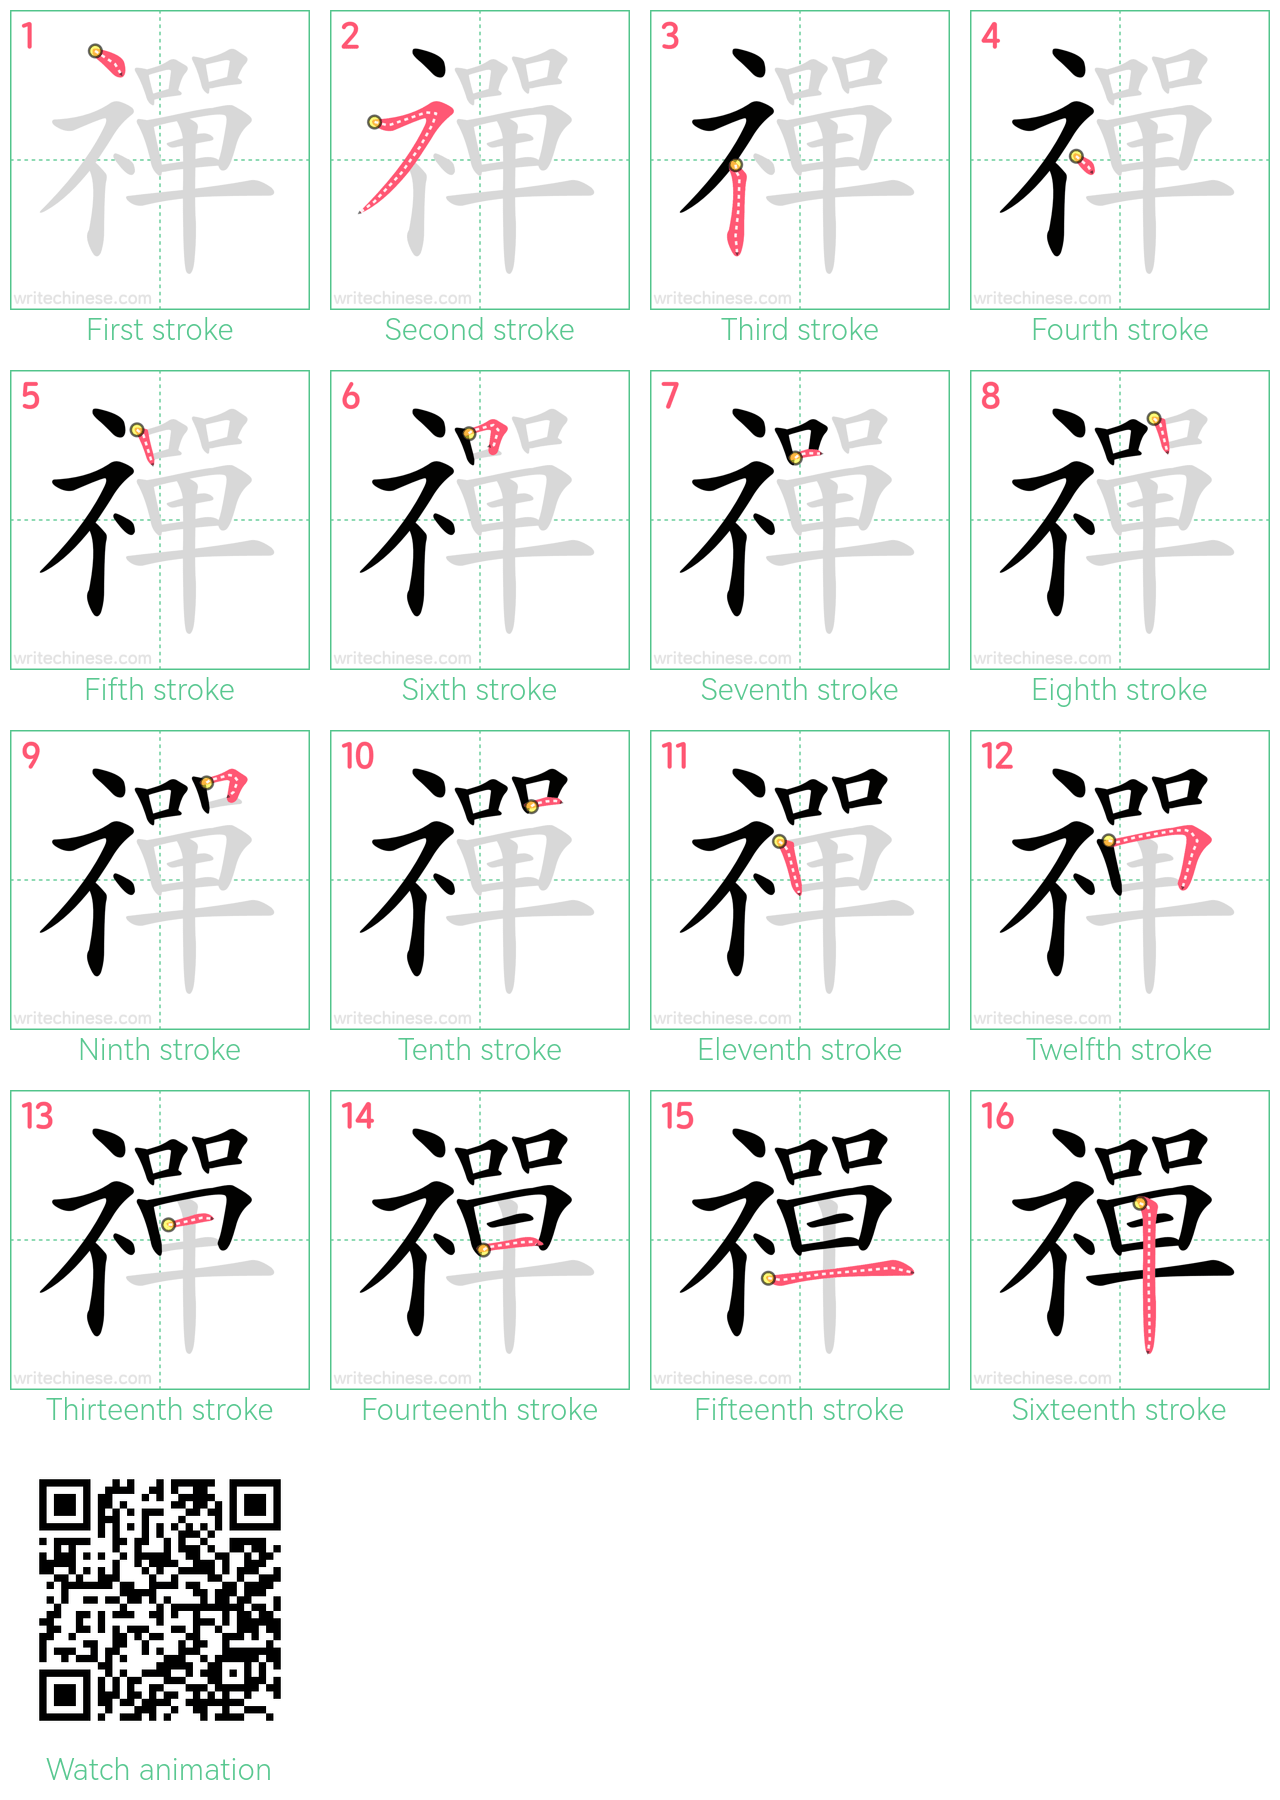 禪 step-by-step stroke order diagrams